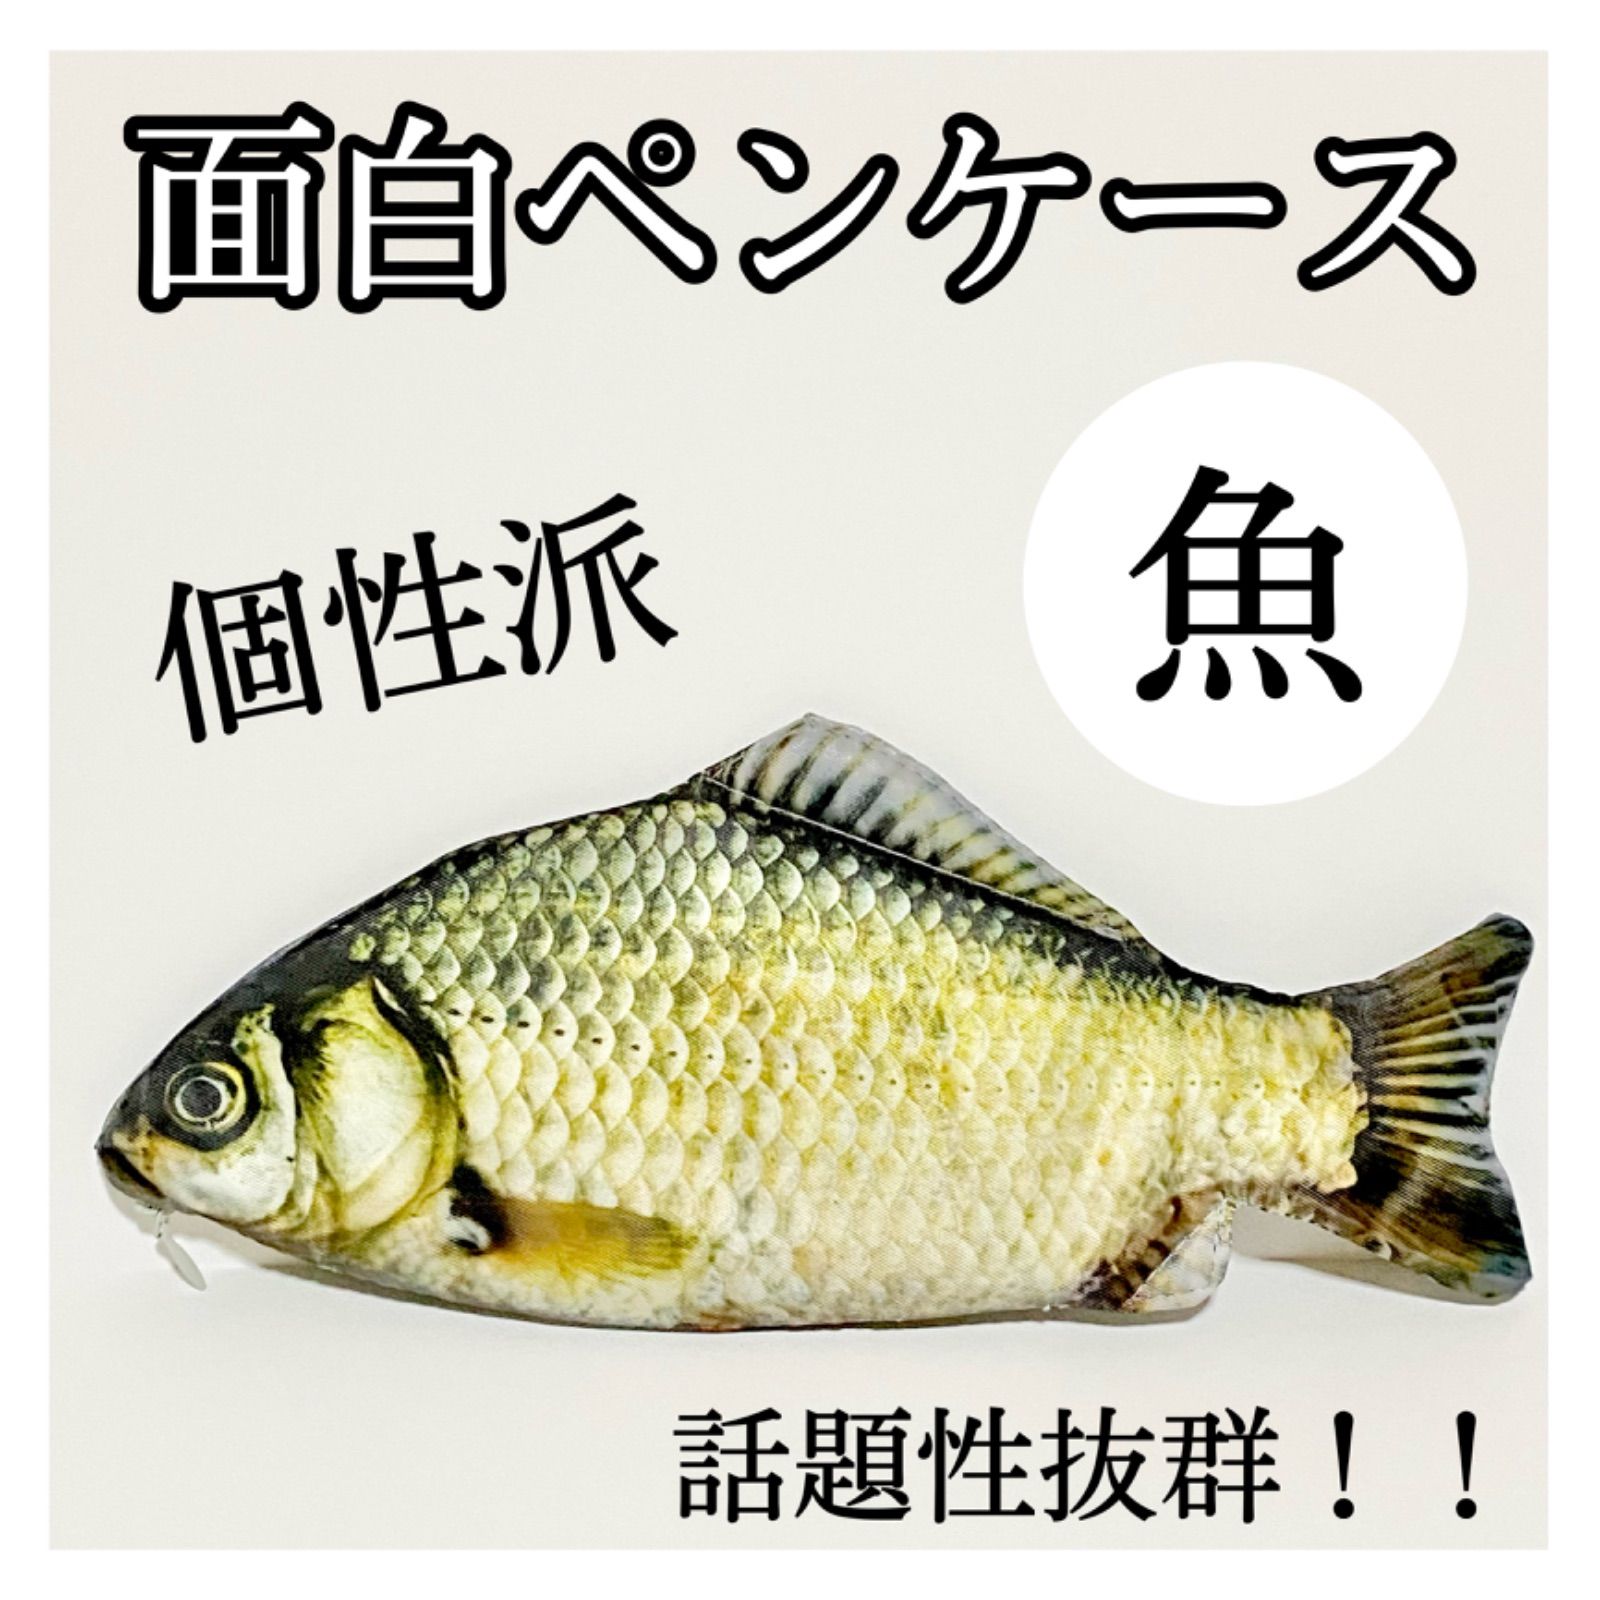 ペンケース 魚 おもしろペンケース 筆箱 個性派 魚ペンケース - メルカリ